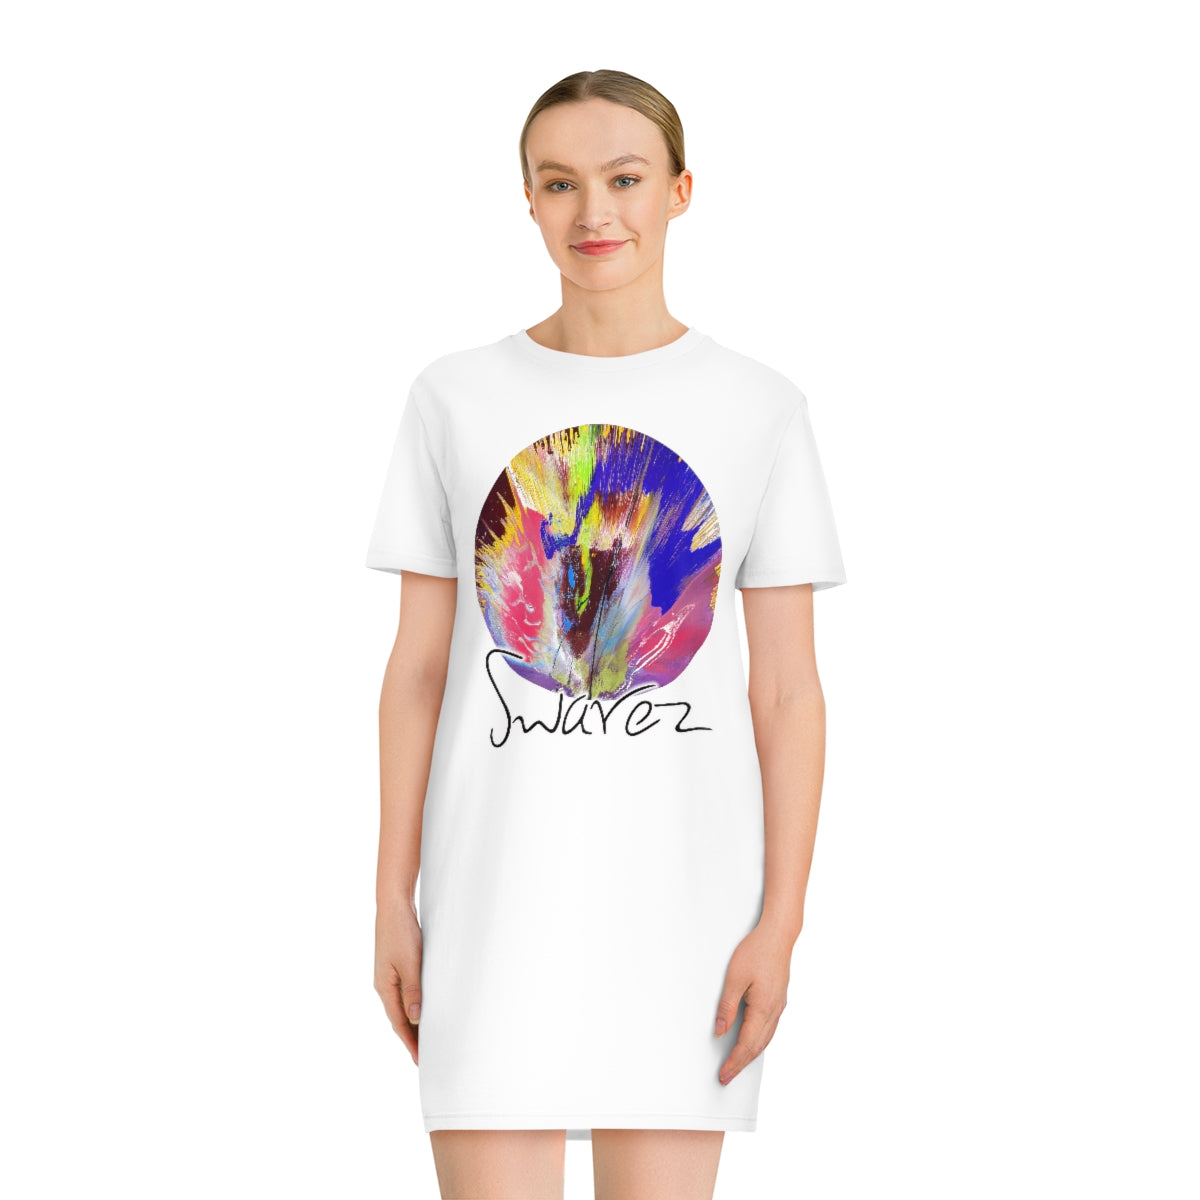 Spinner T-Shirt Dress - Circles design